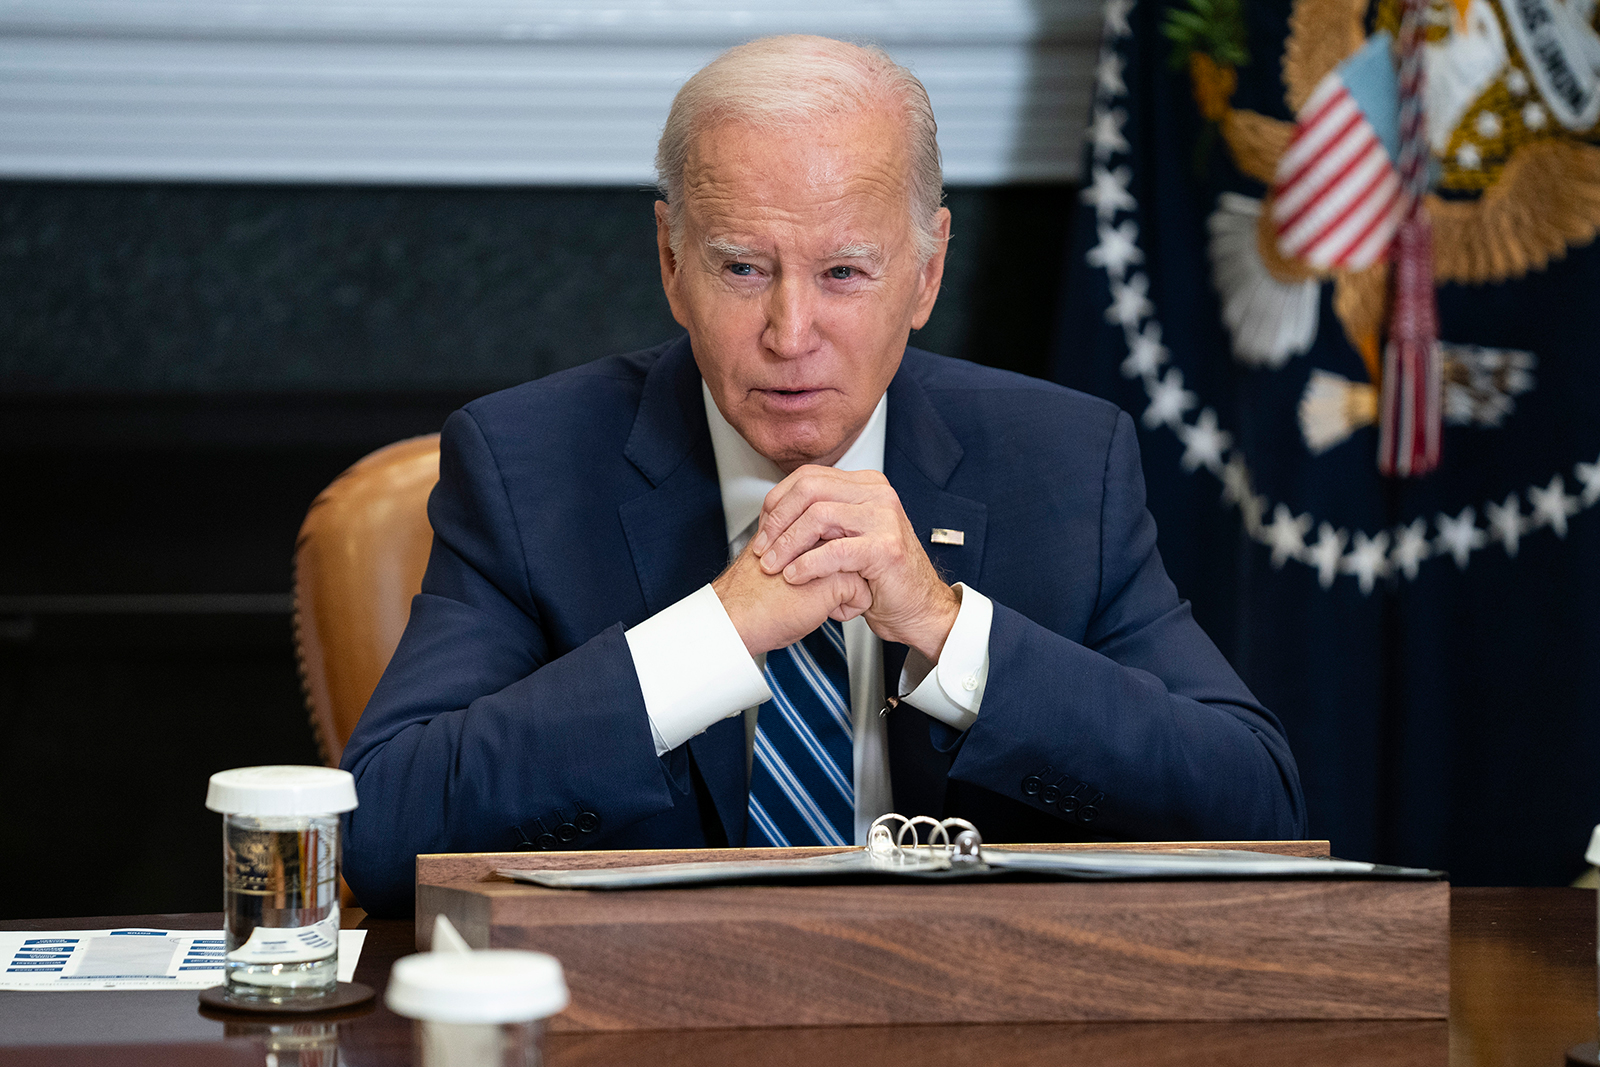 El presidente Joe Biden habla durante una reunión en Washington el 21 de noviembre. Evan Vucci/AP/File